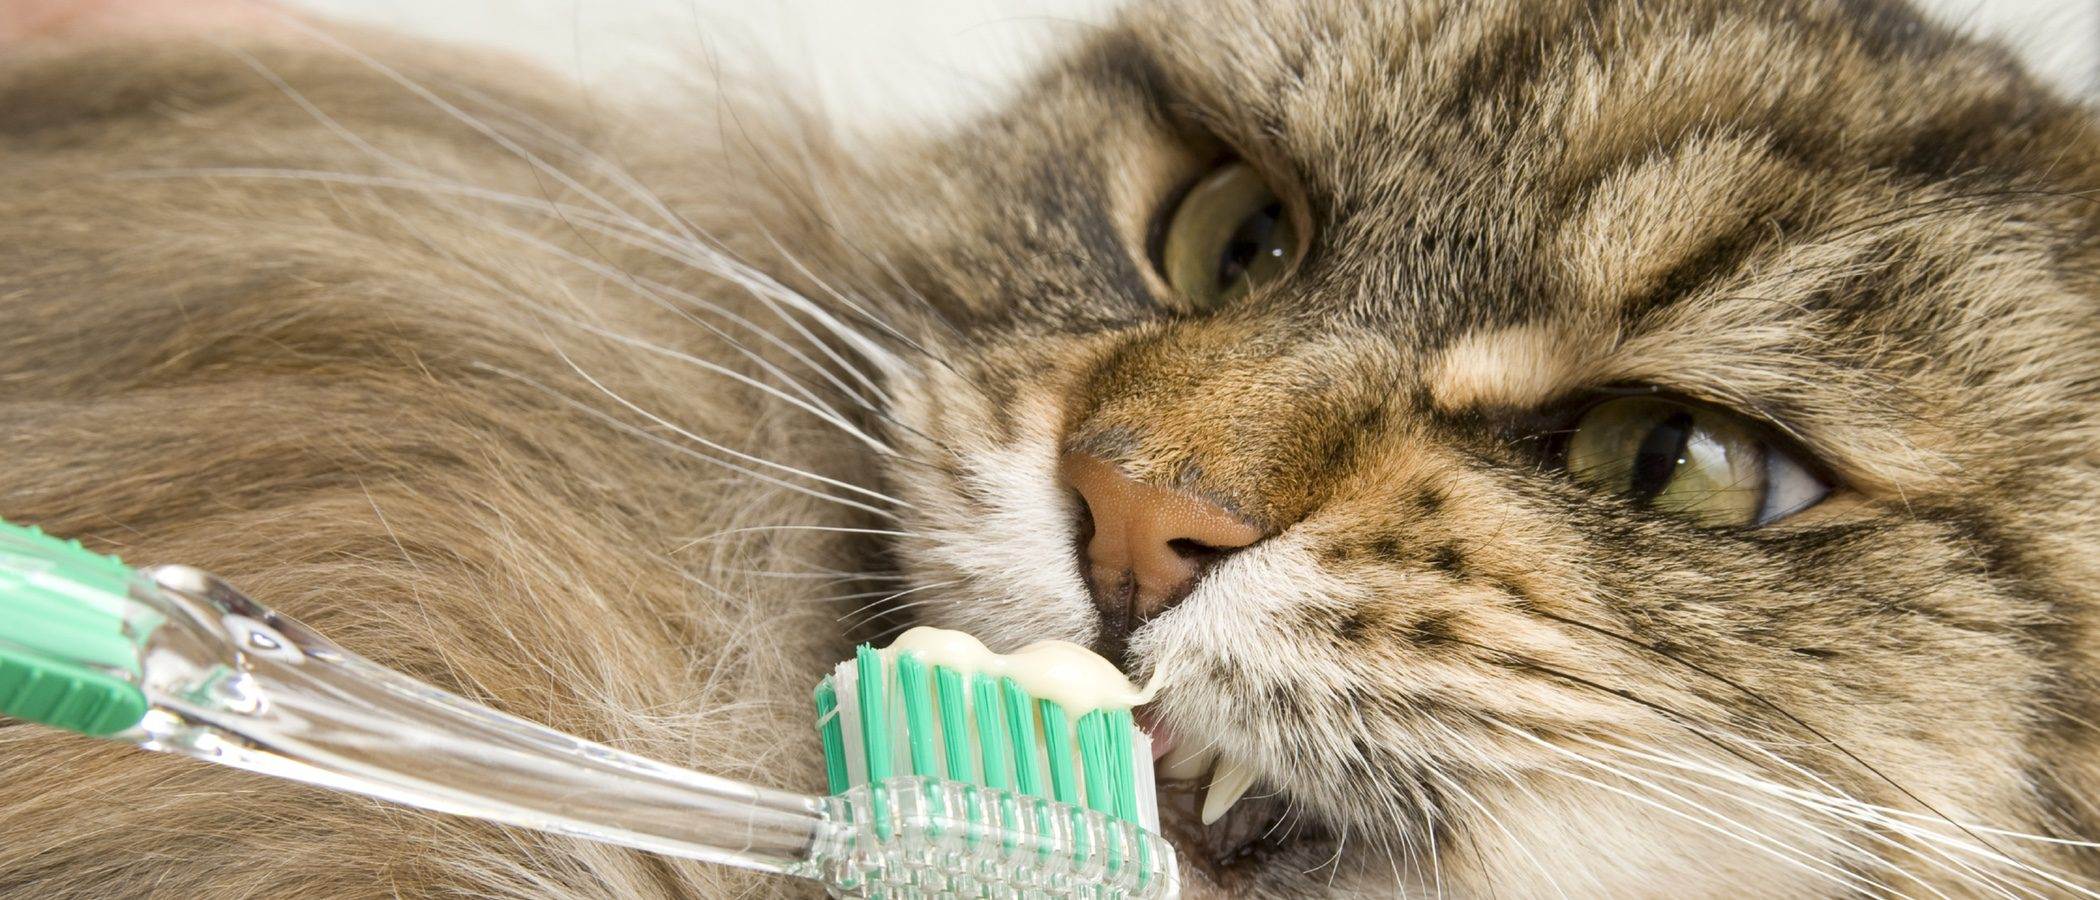 Чистка зубов кошке: как провести процедуру самостоятельно и не быть расцарапанным